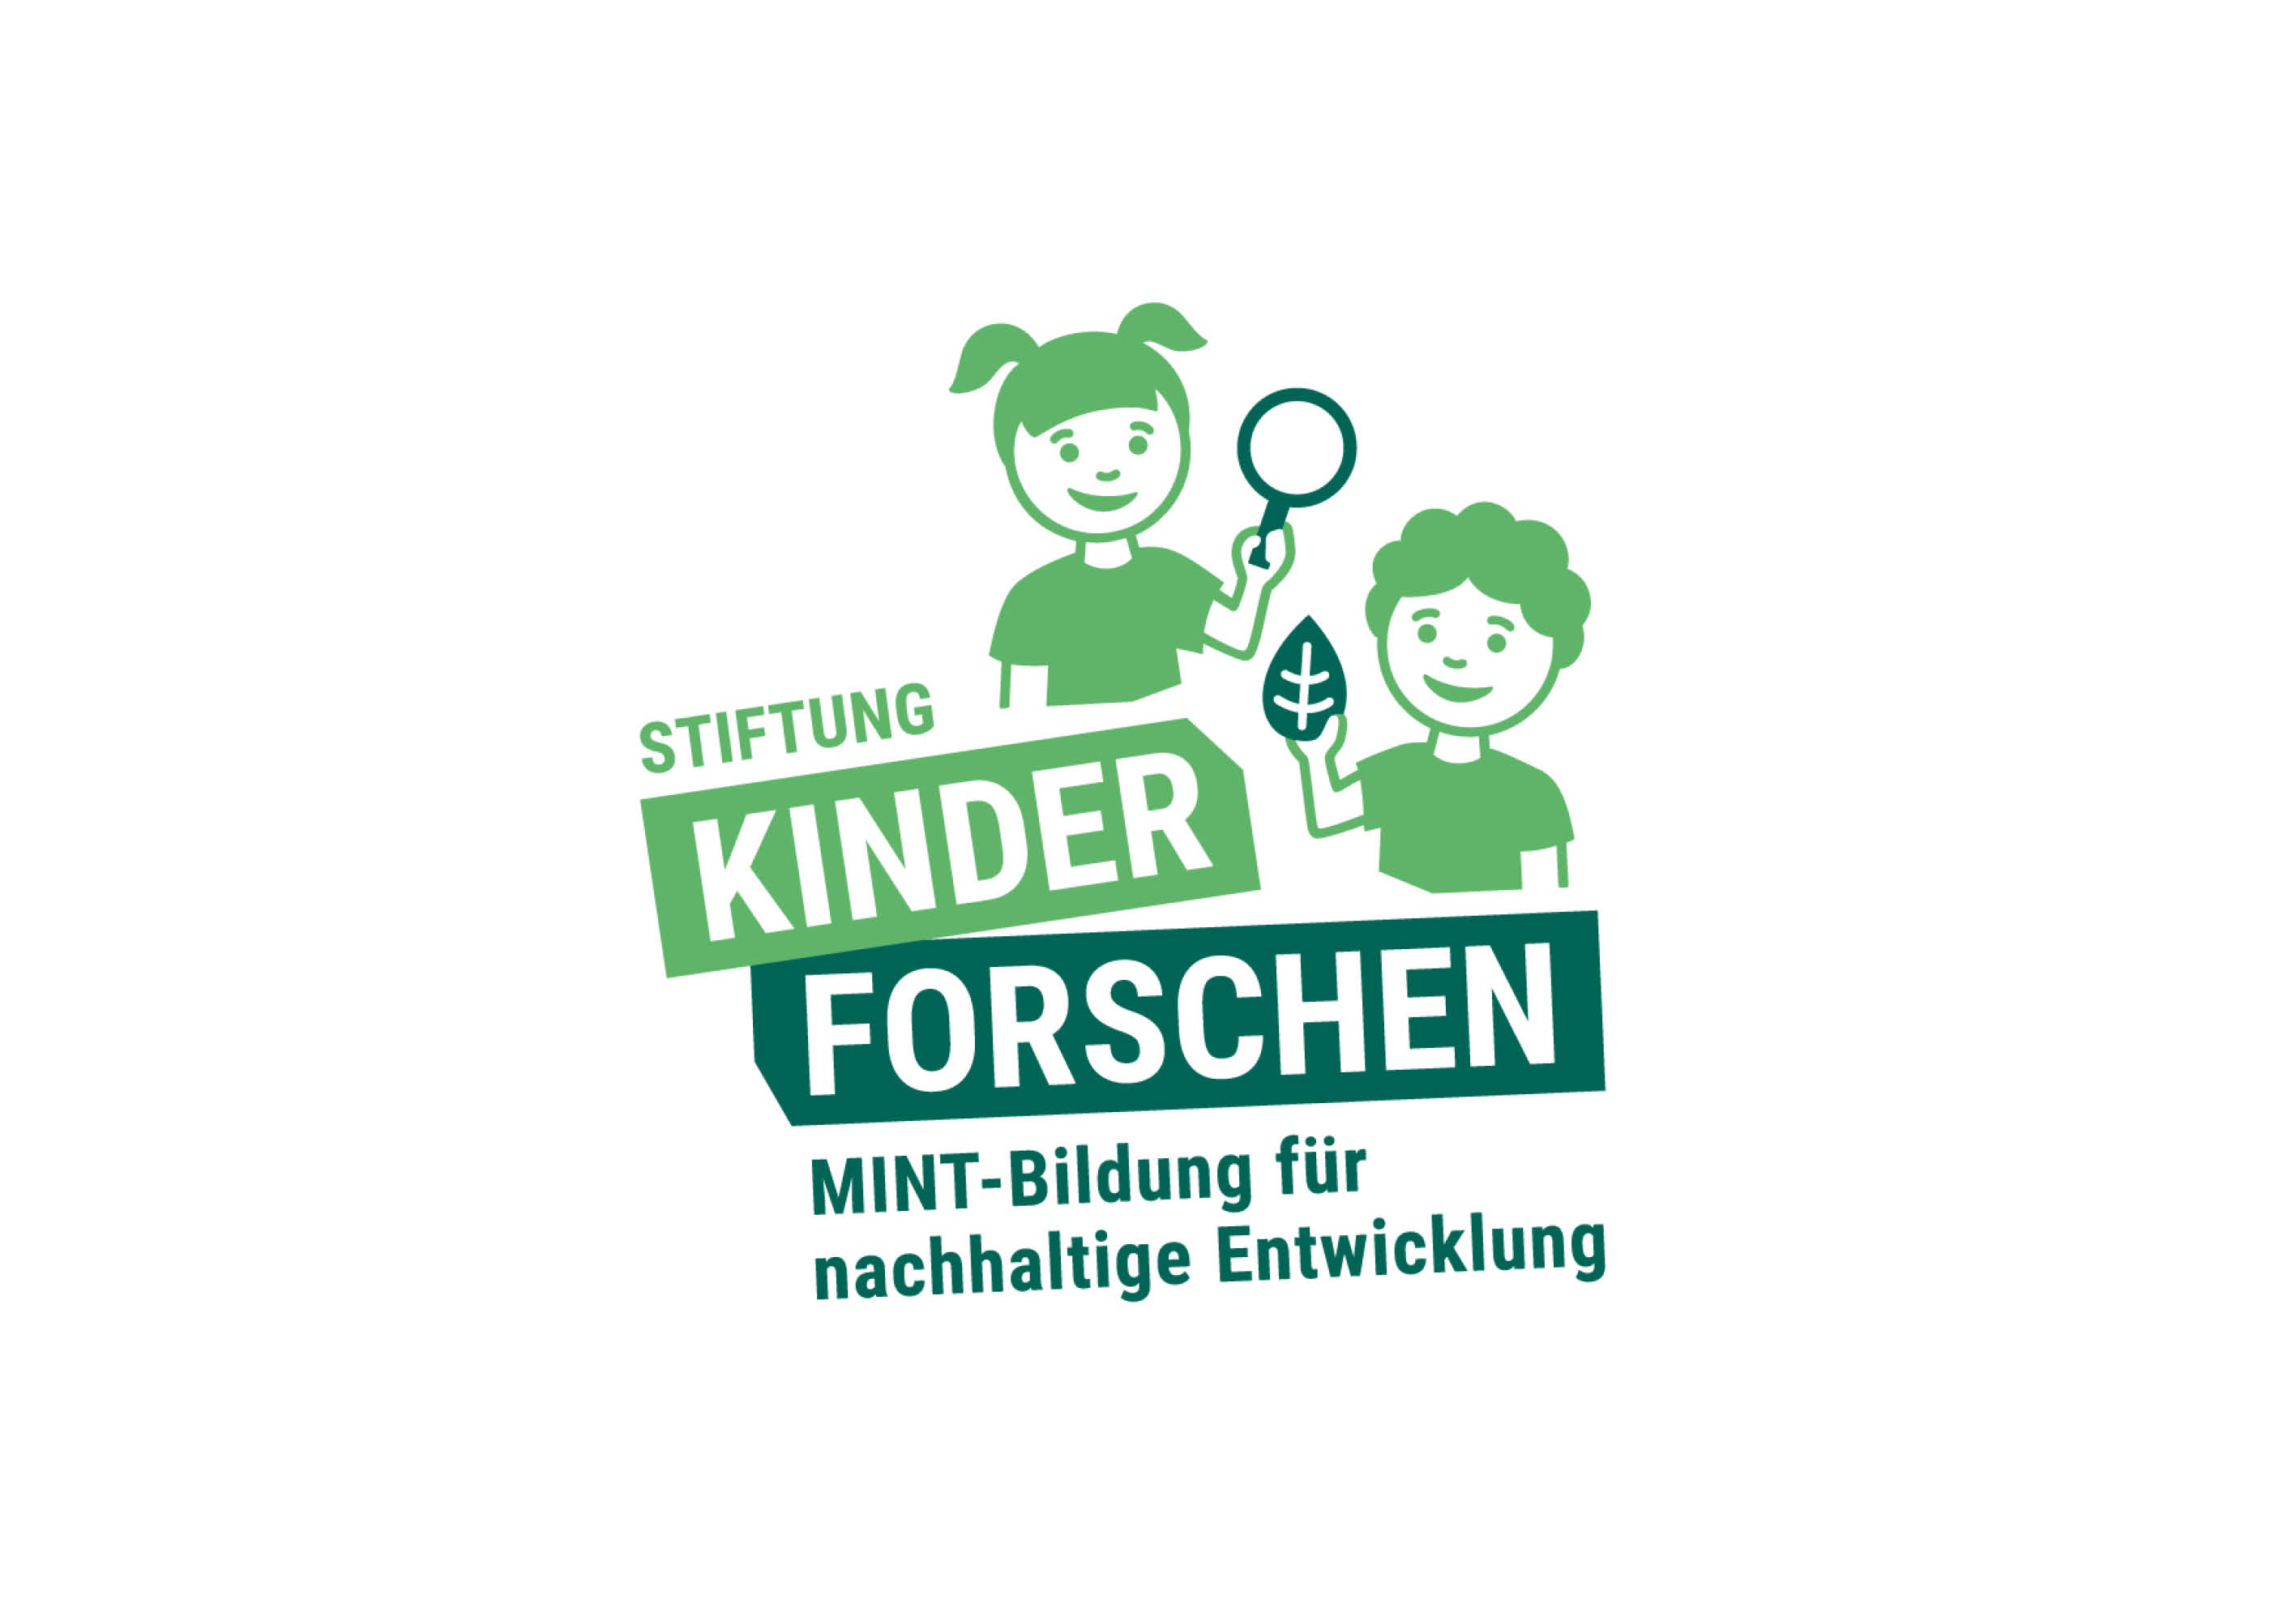 Stiftung "Kinder forschen"